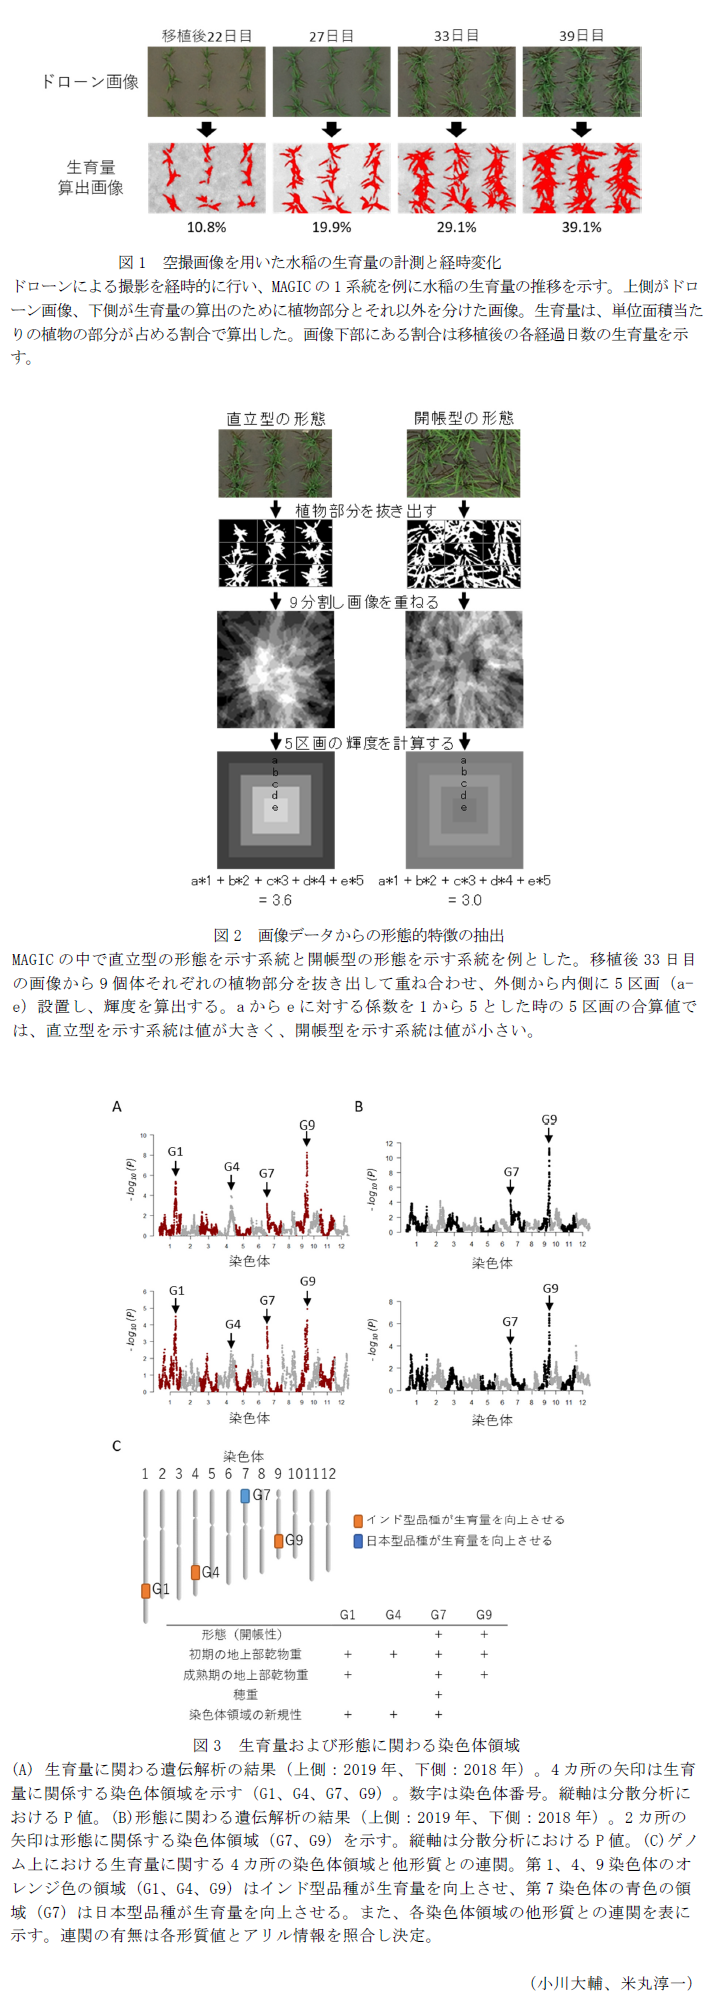 図1 空撮画像を用いた水稲の生育量の計測と経時変化,図2 画像データからの形態的特徴の抽出,図3 生育量および形態に関わる染色体領域